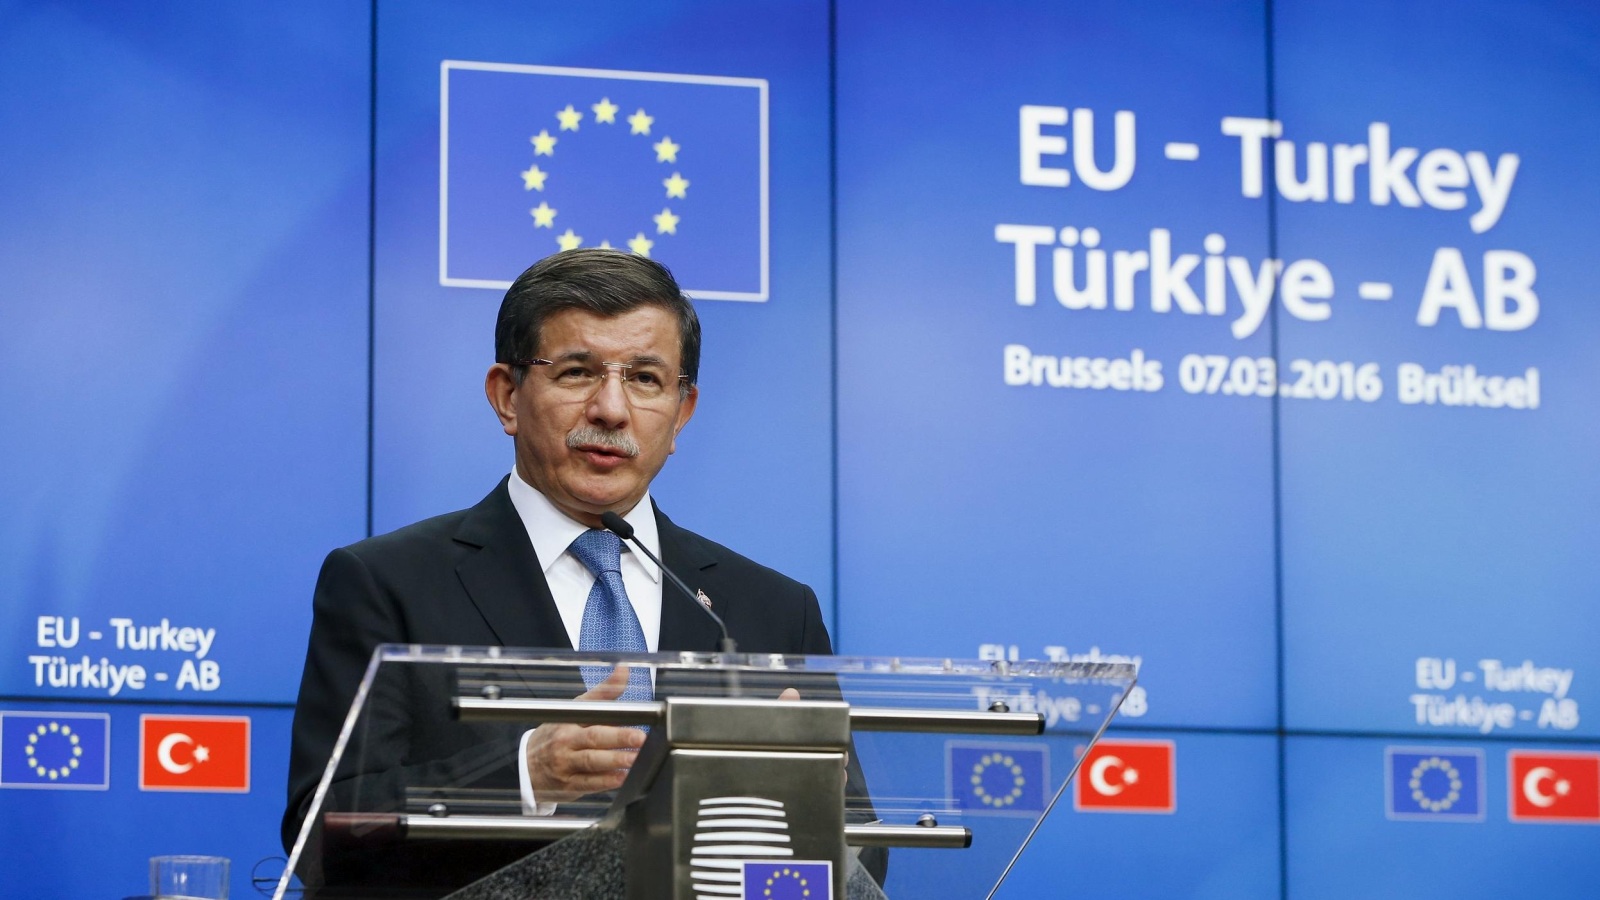 ‪رئيس الوزراء التركي أحمد داود أوغلو يلقي كلمة في قمة تركيا والاتحاد الأوروبي في بروكسل‬ رئيس الوزراء التركي أحمد داود أوغلو يلقي كلمة في قمة تركيا والاتحاد الأوروبي في بروكسل (رويترز)